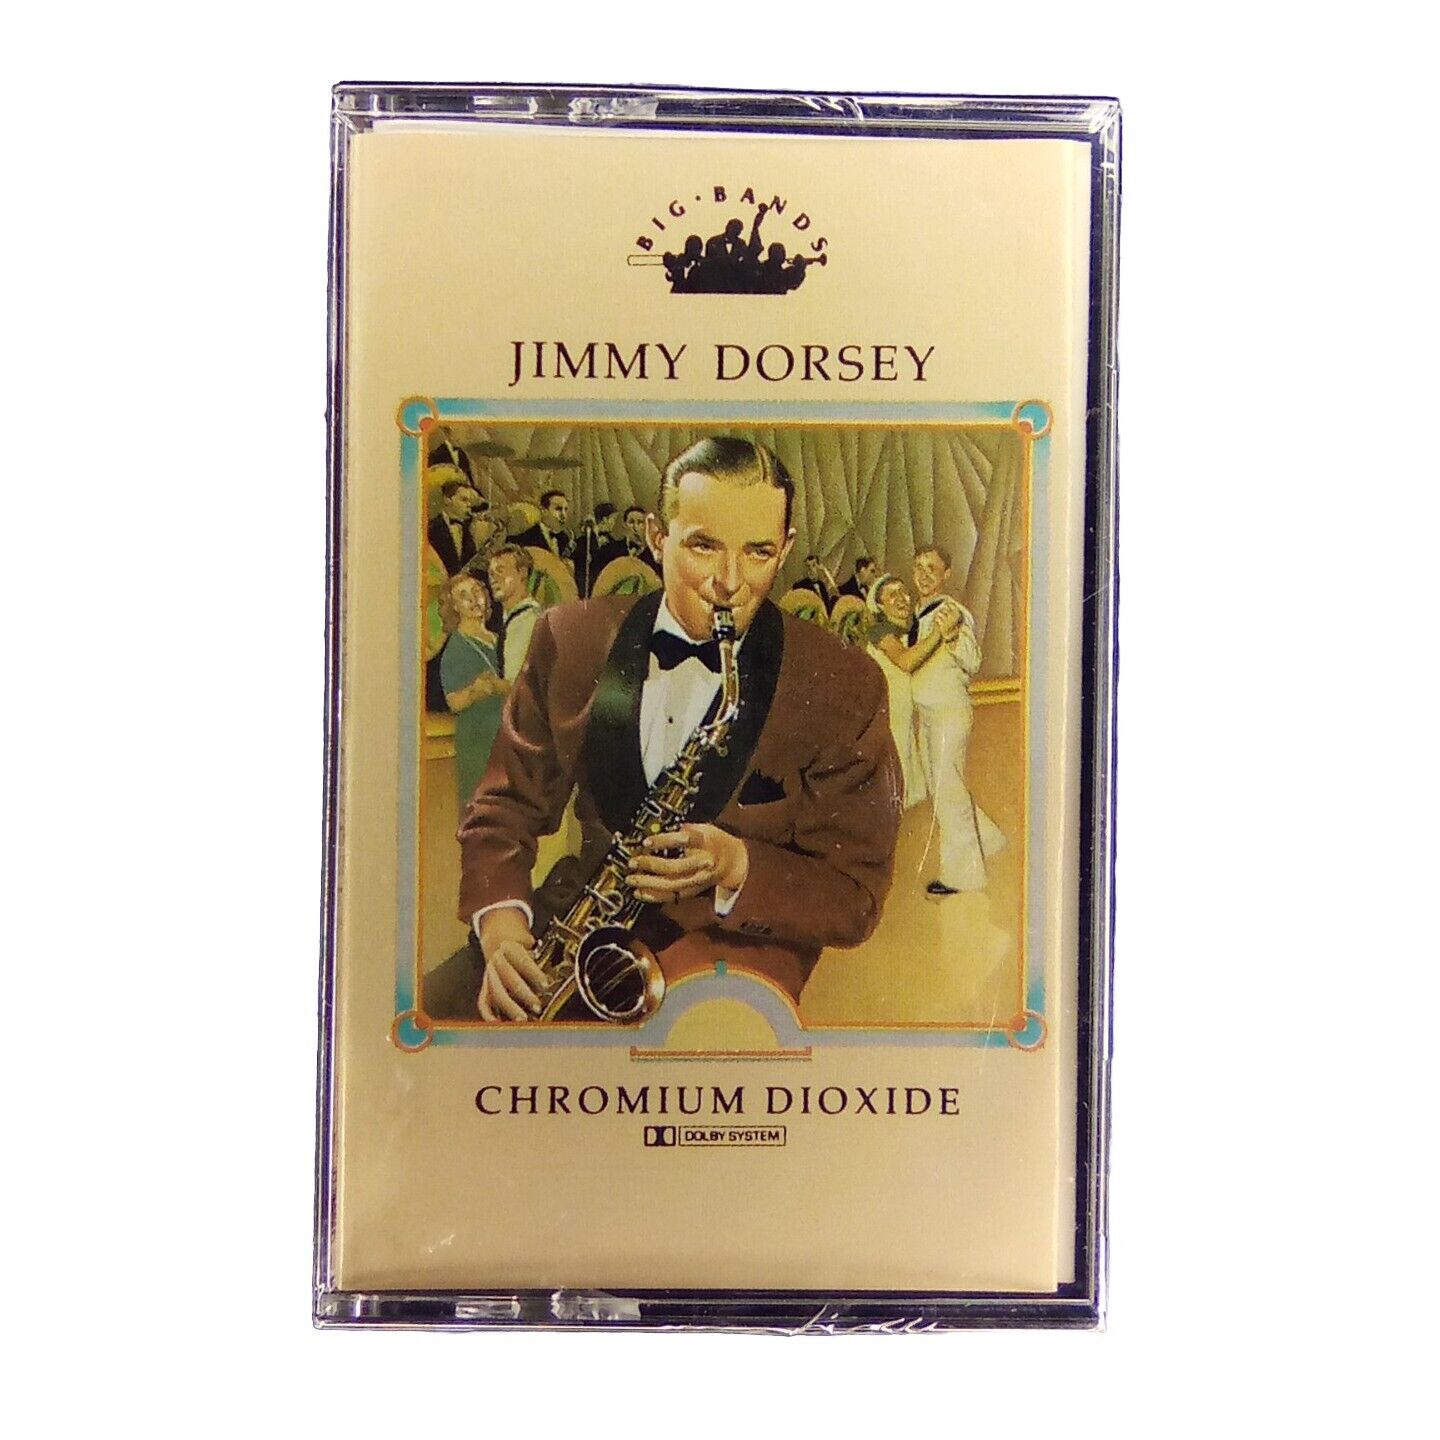 Jimmy Dorsey Big Bangs Cassette 21 Songs Chromium Dioxide New In Shrink Wrap